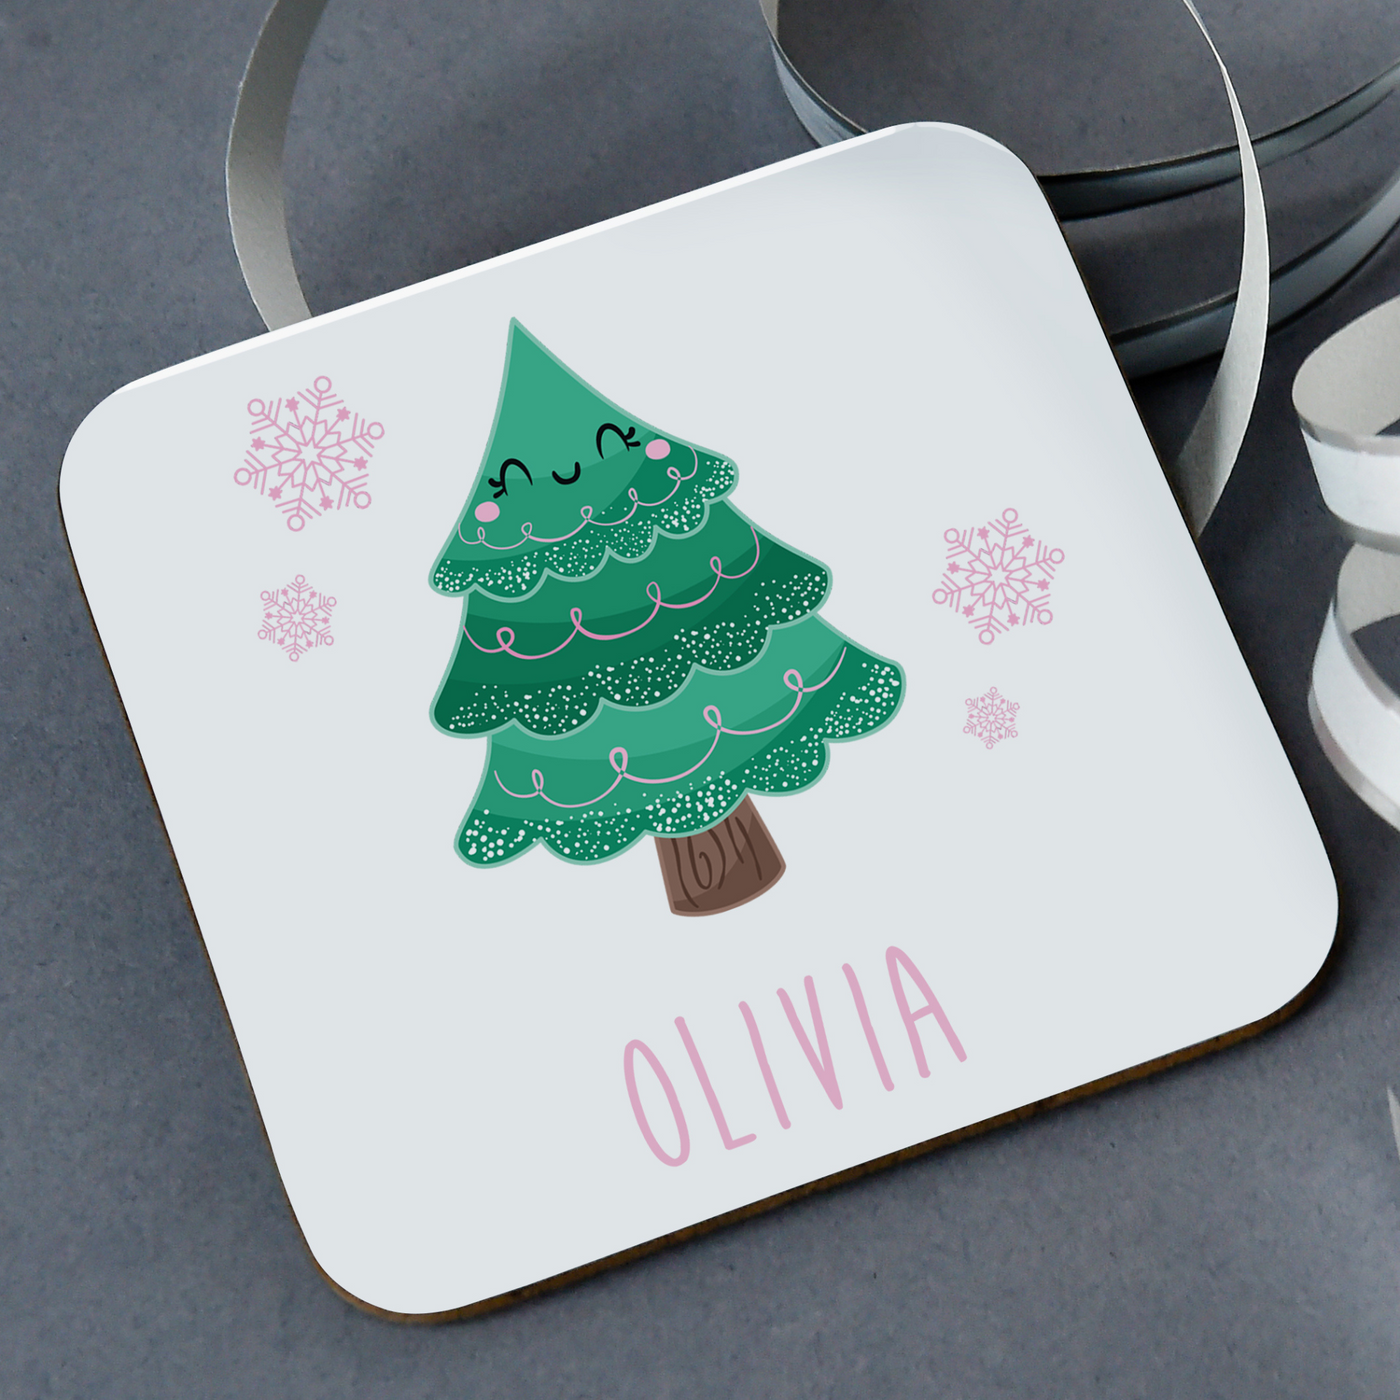 Personalised Coaster | Christmas Tree